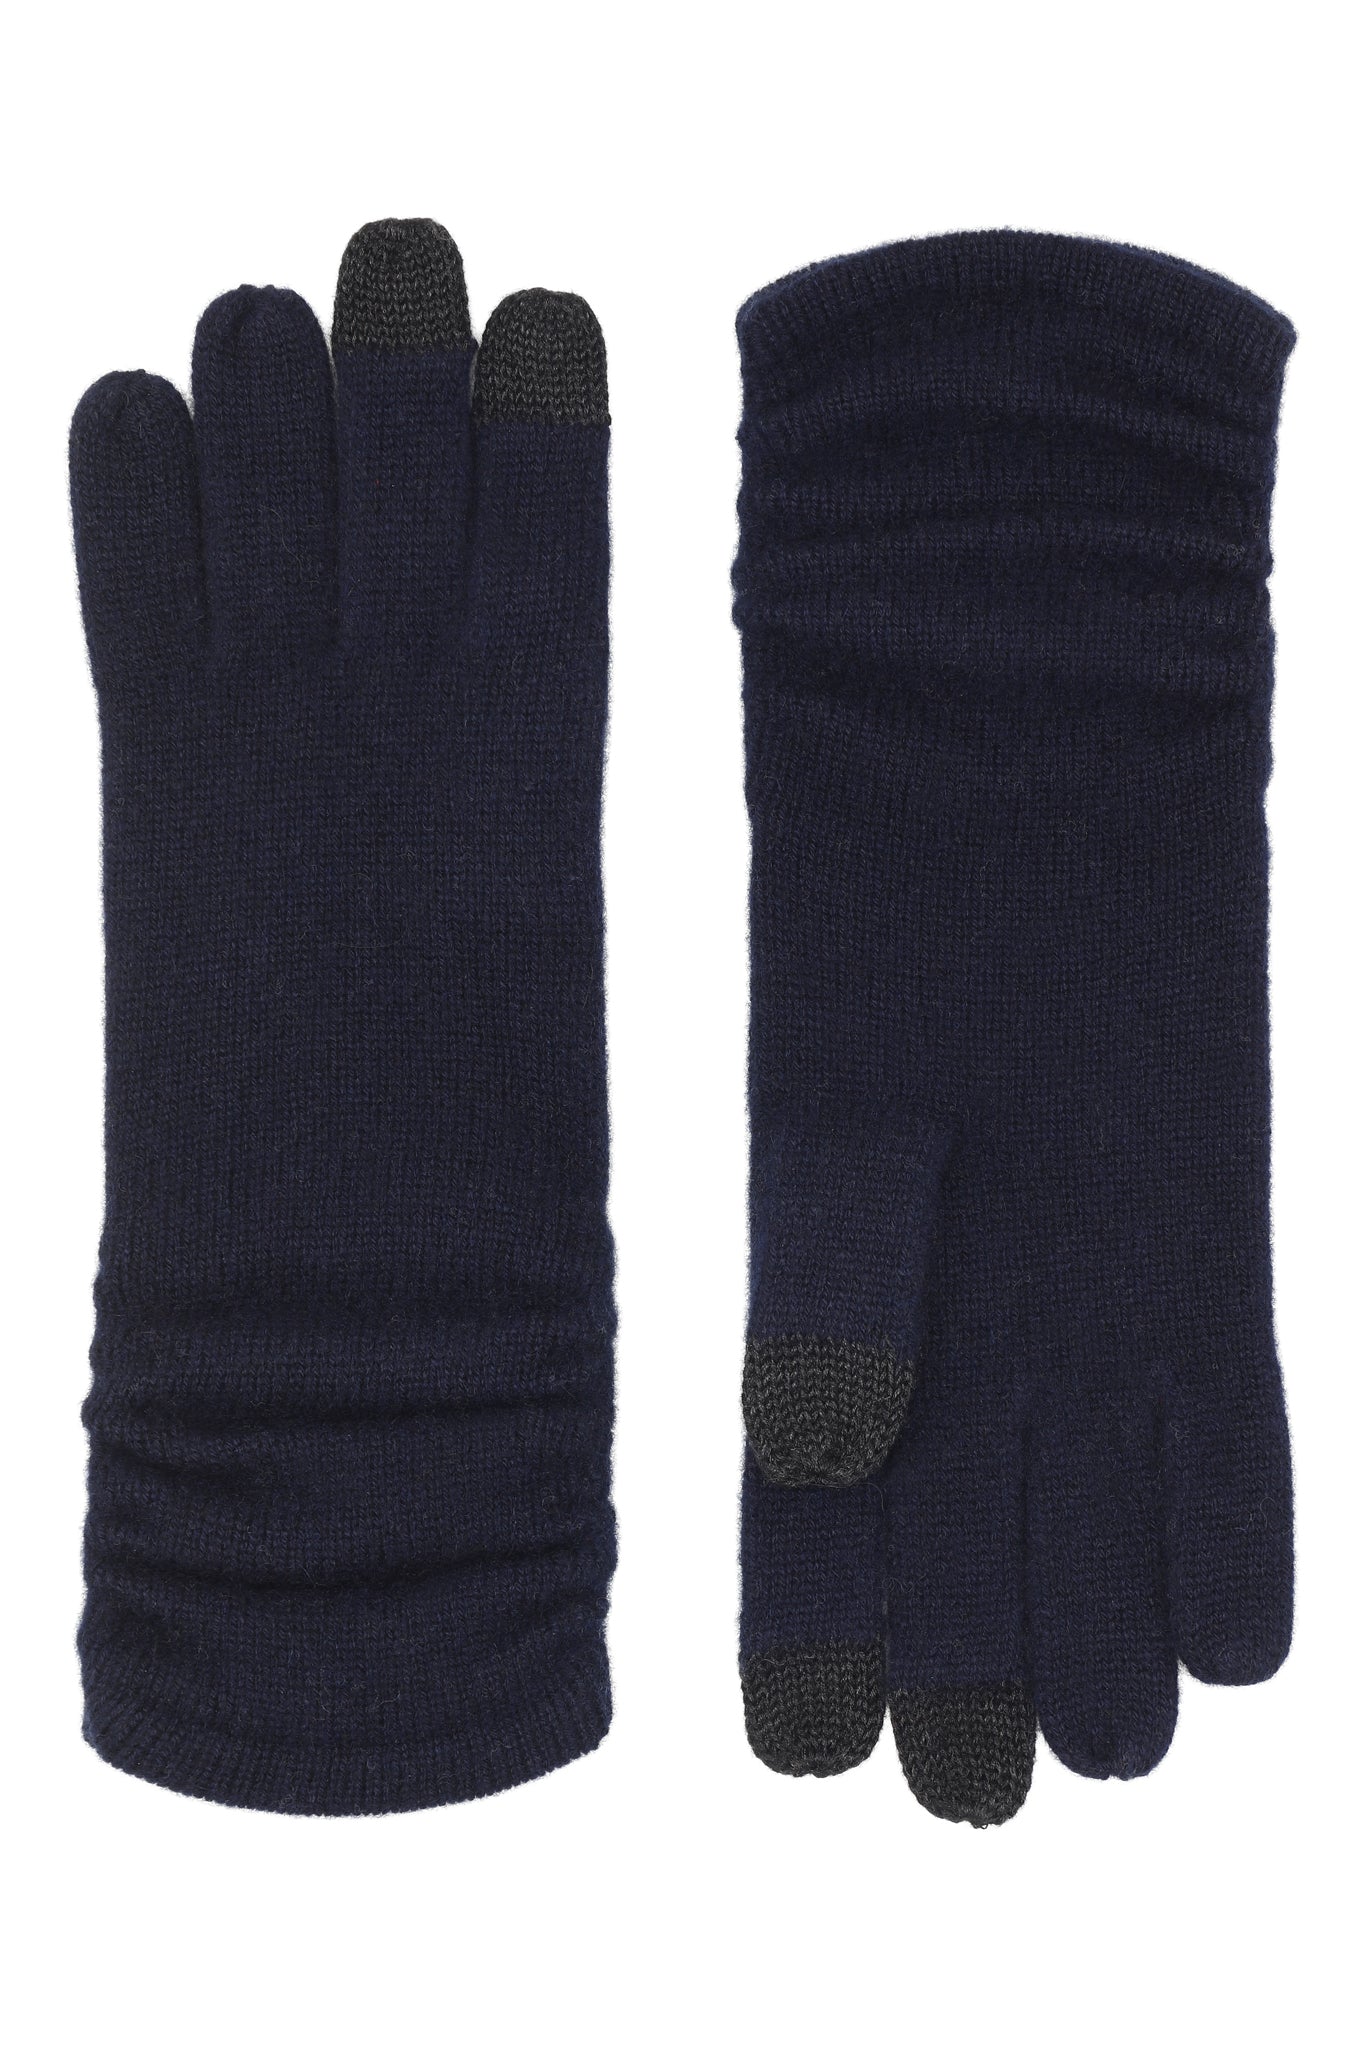 Touch - cashmere handsker - Mørk marineblå